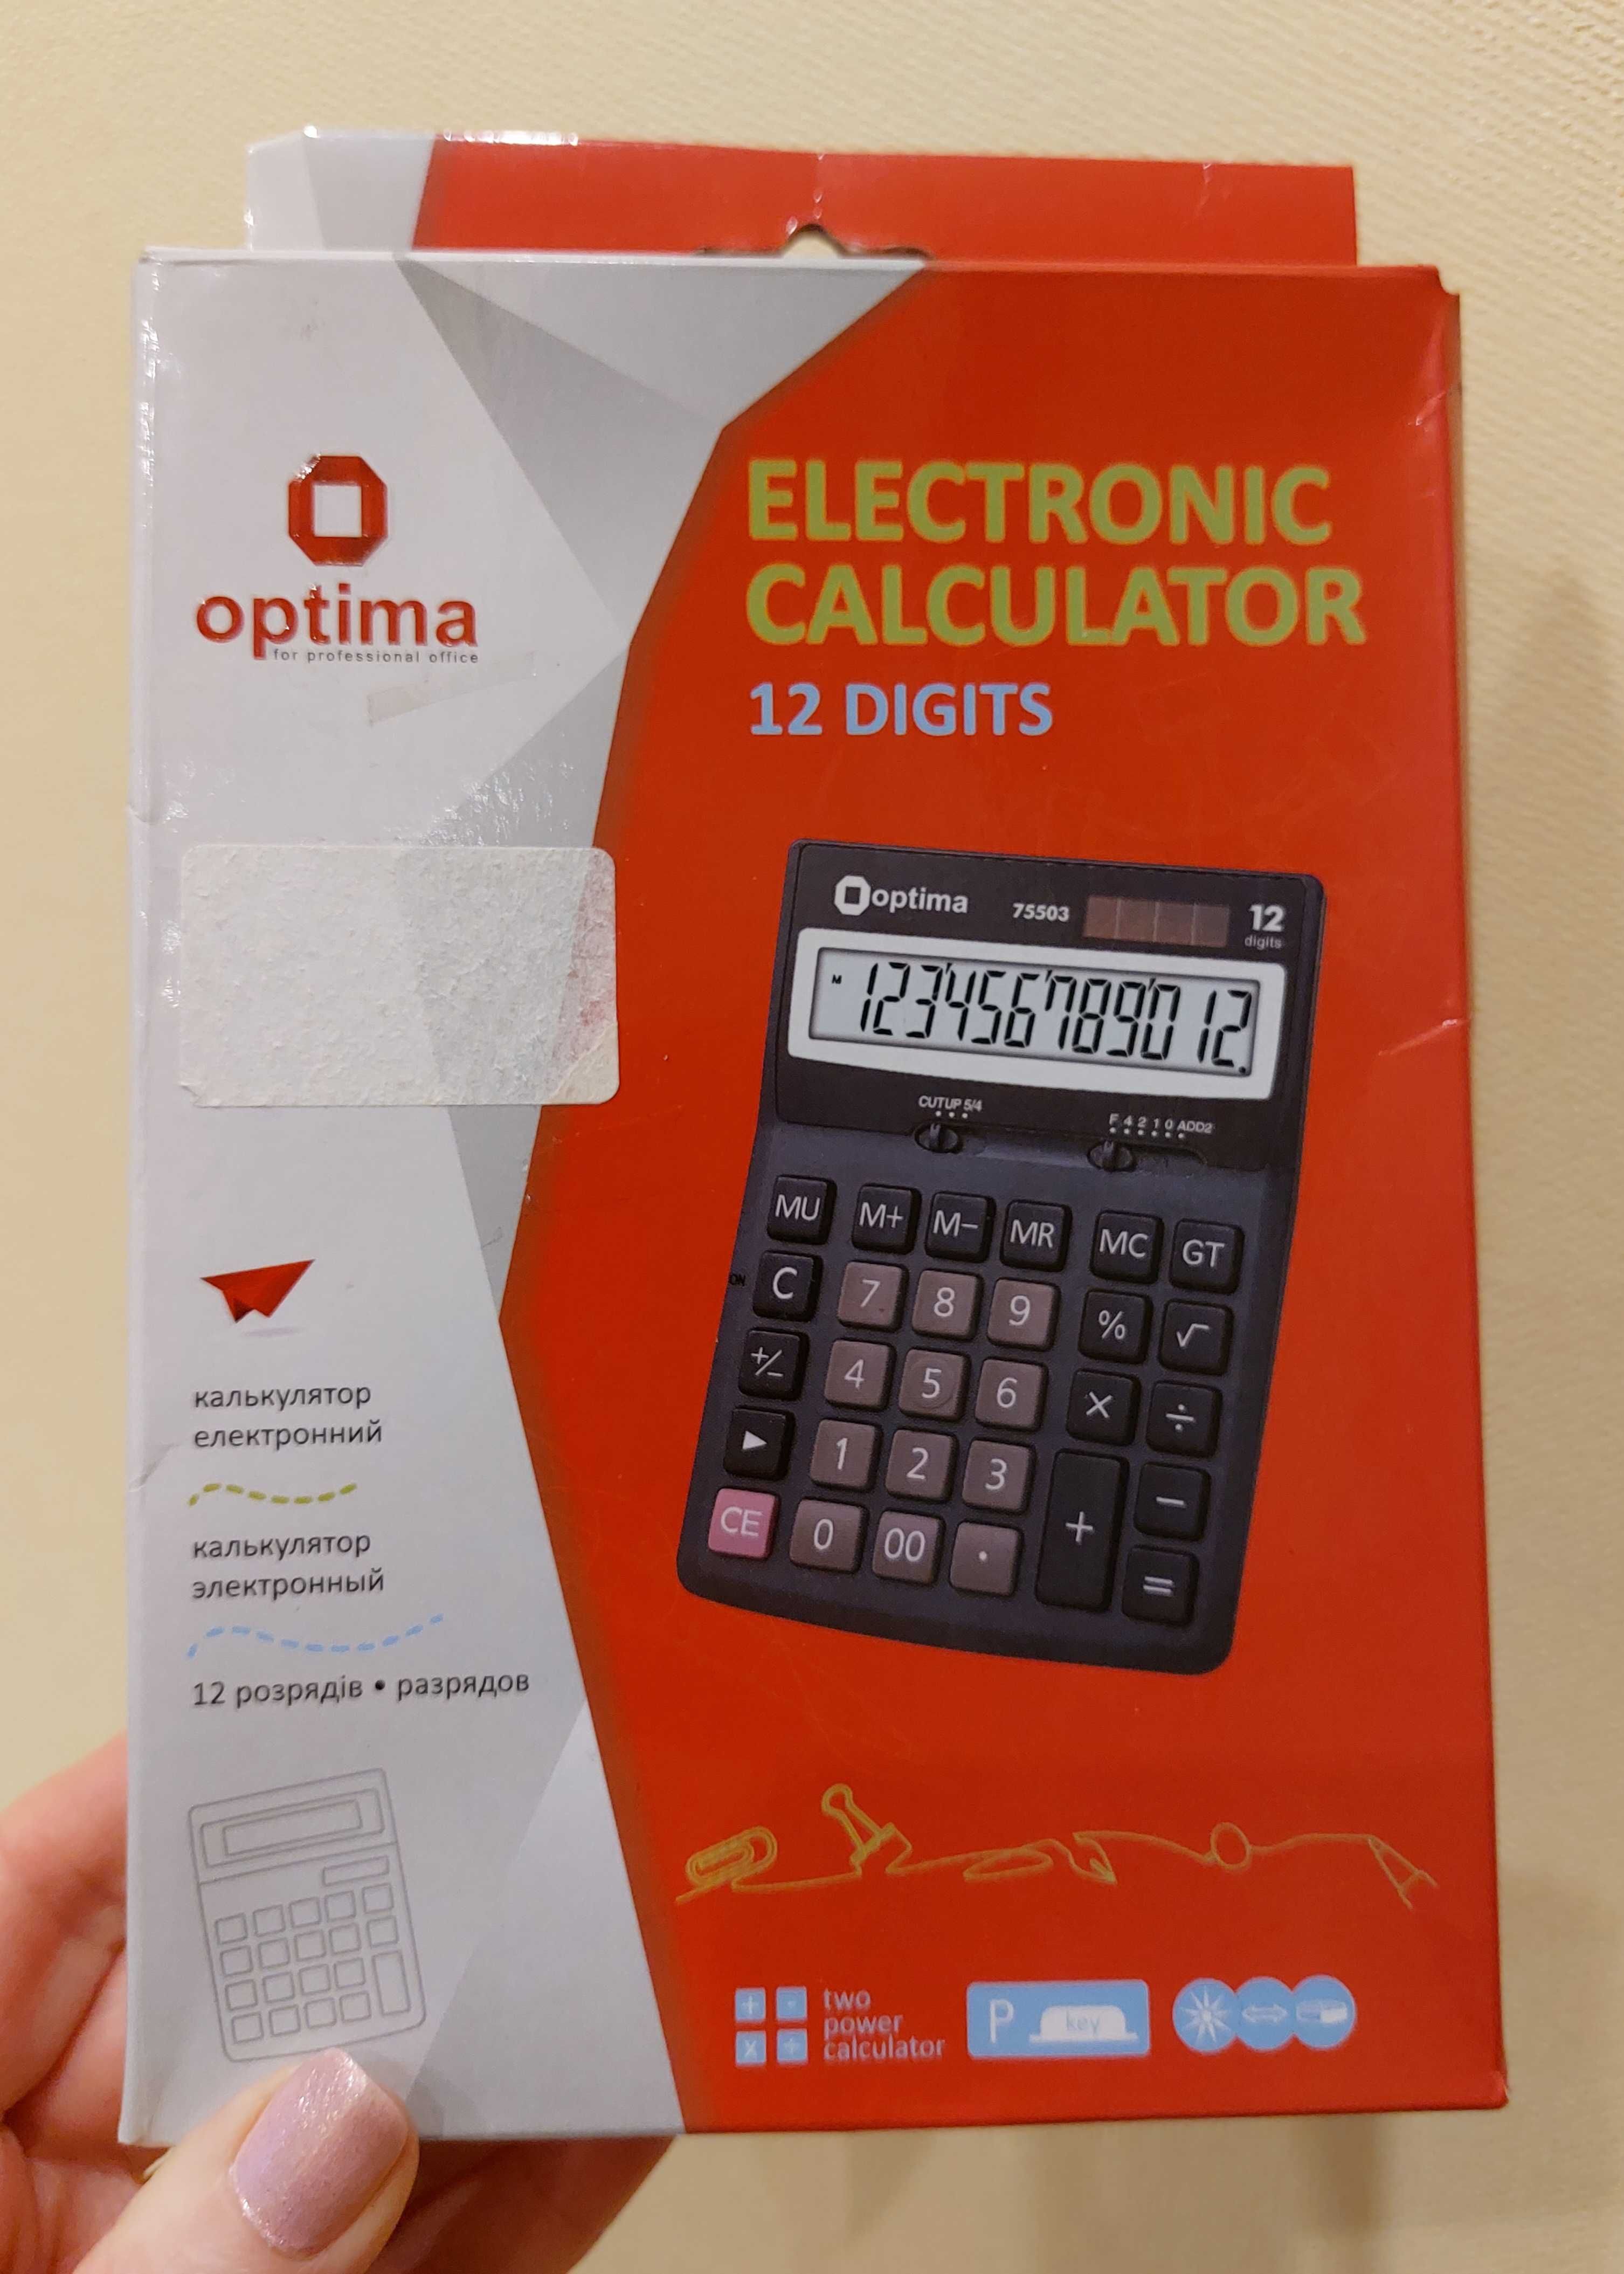 Новые калькуляторы BRILLIANT BS-777RD и Optima 75503, 12 разрядов